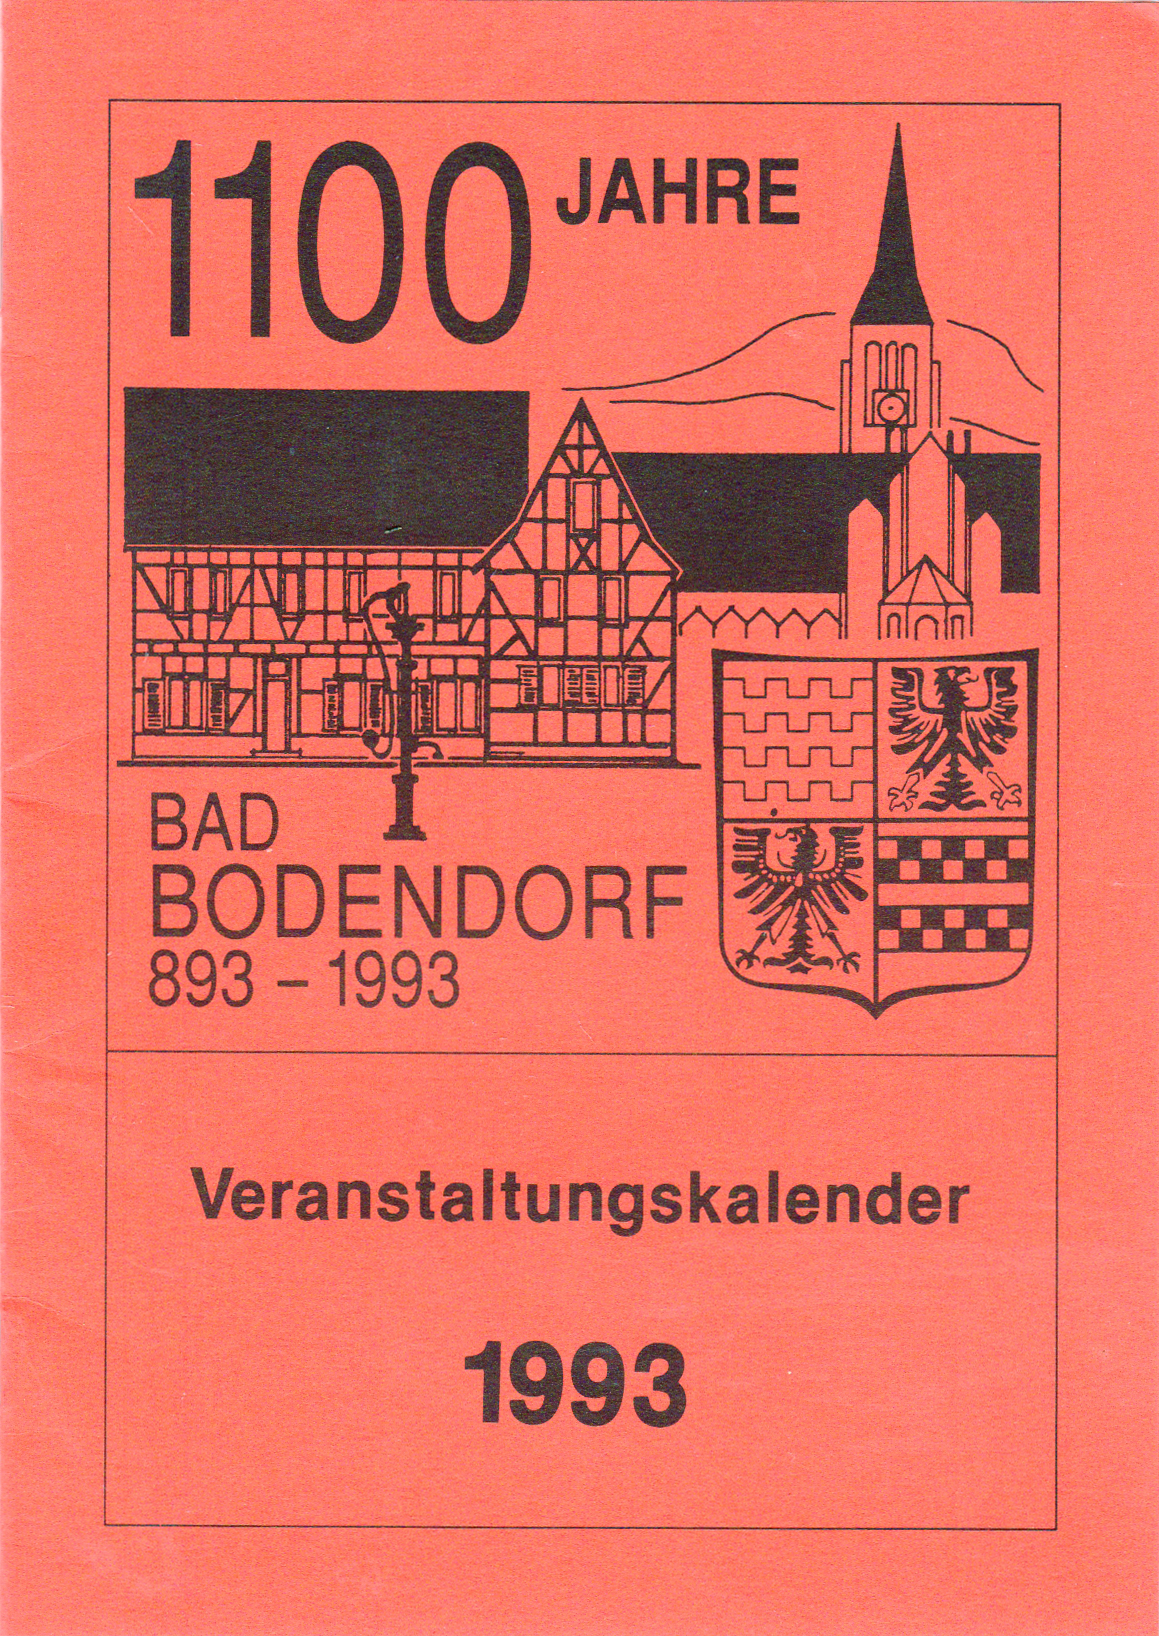 Veranstaltungskalender zur 1100 Jahrfeier Bad Bodendorf (Heimatmuseum und -Archiv Bad Bodendorf CC BY-NC-SA)